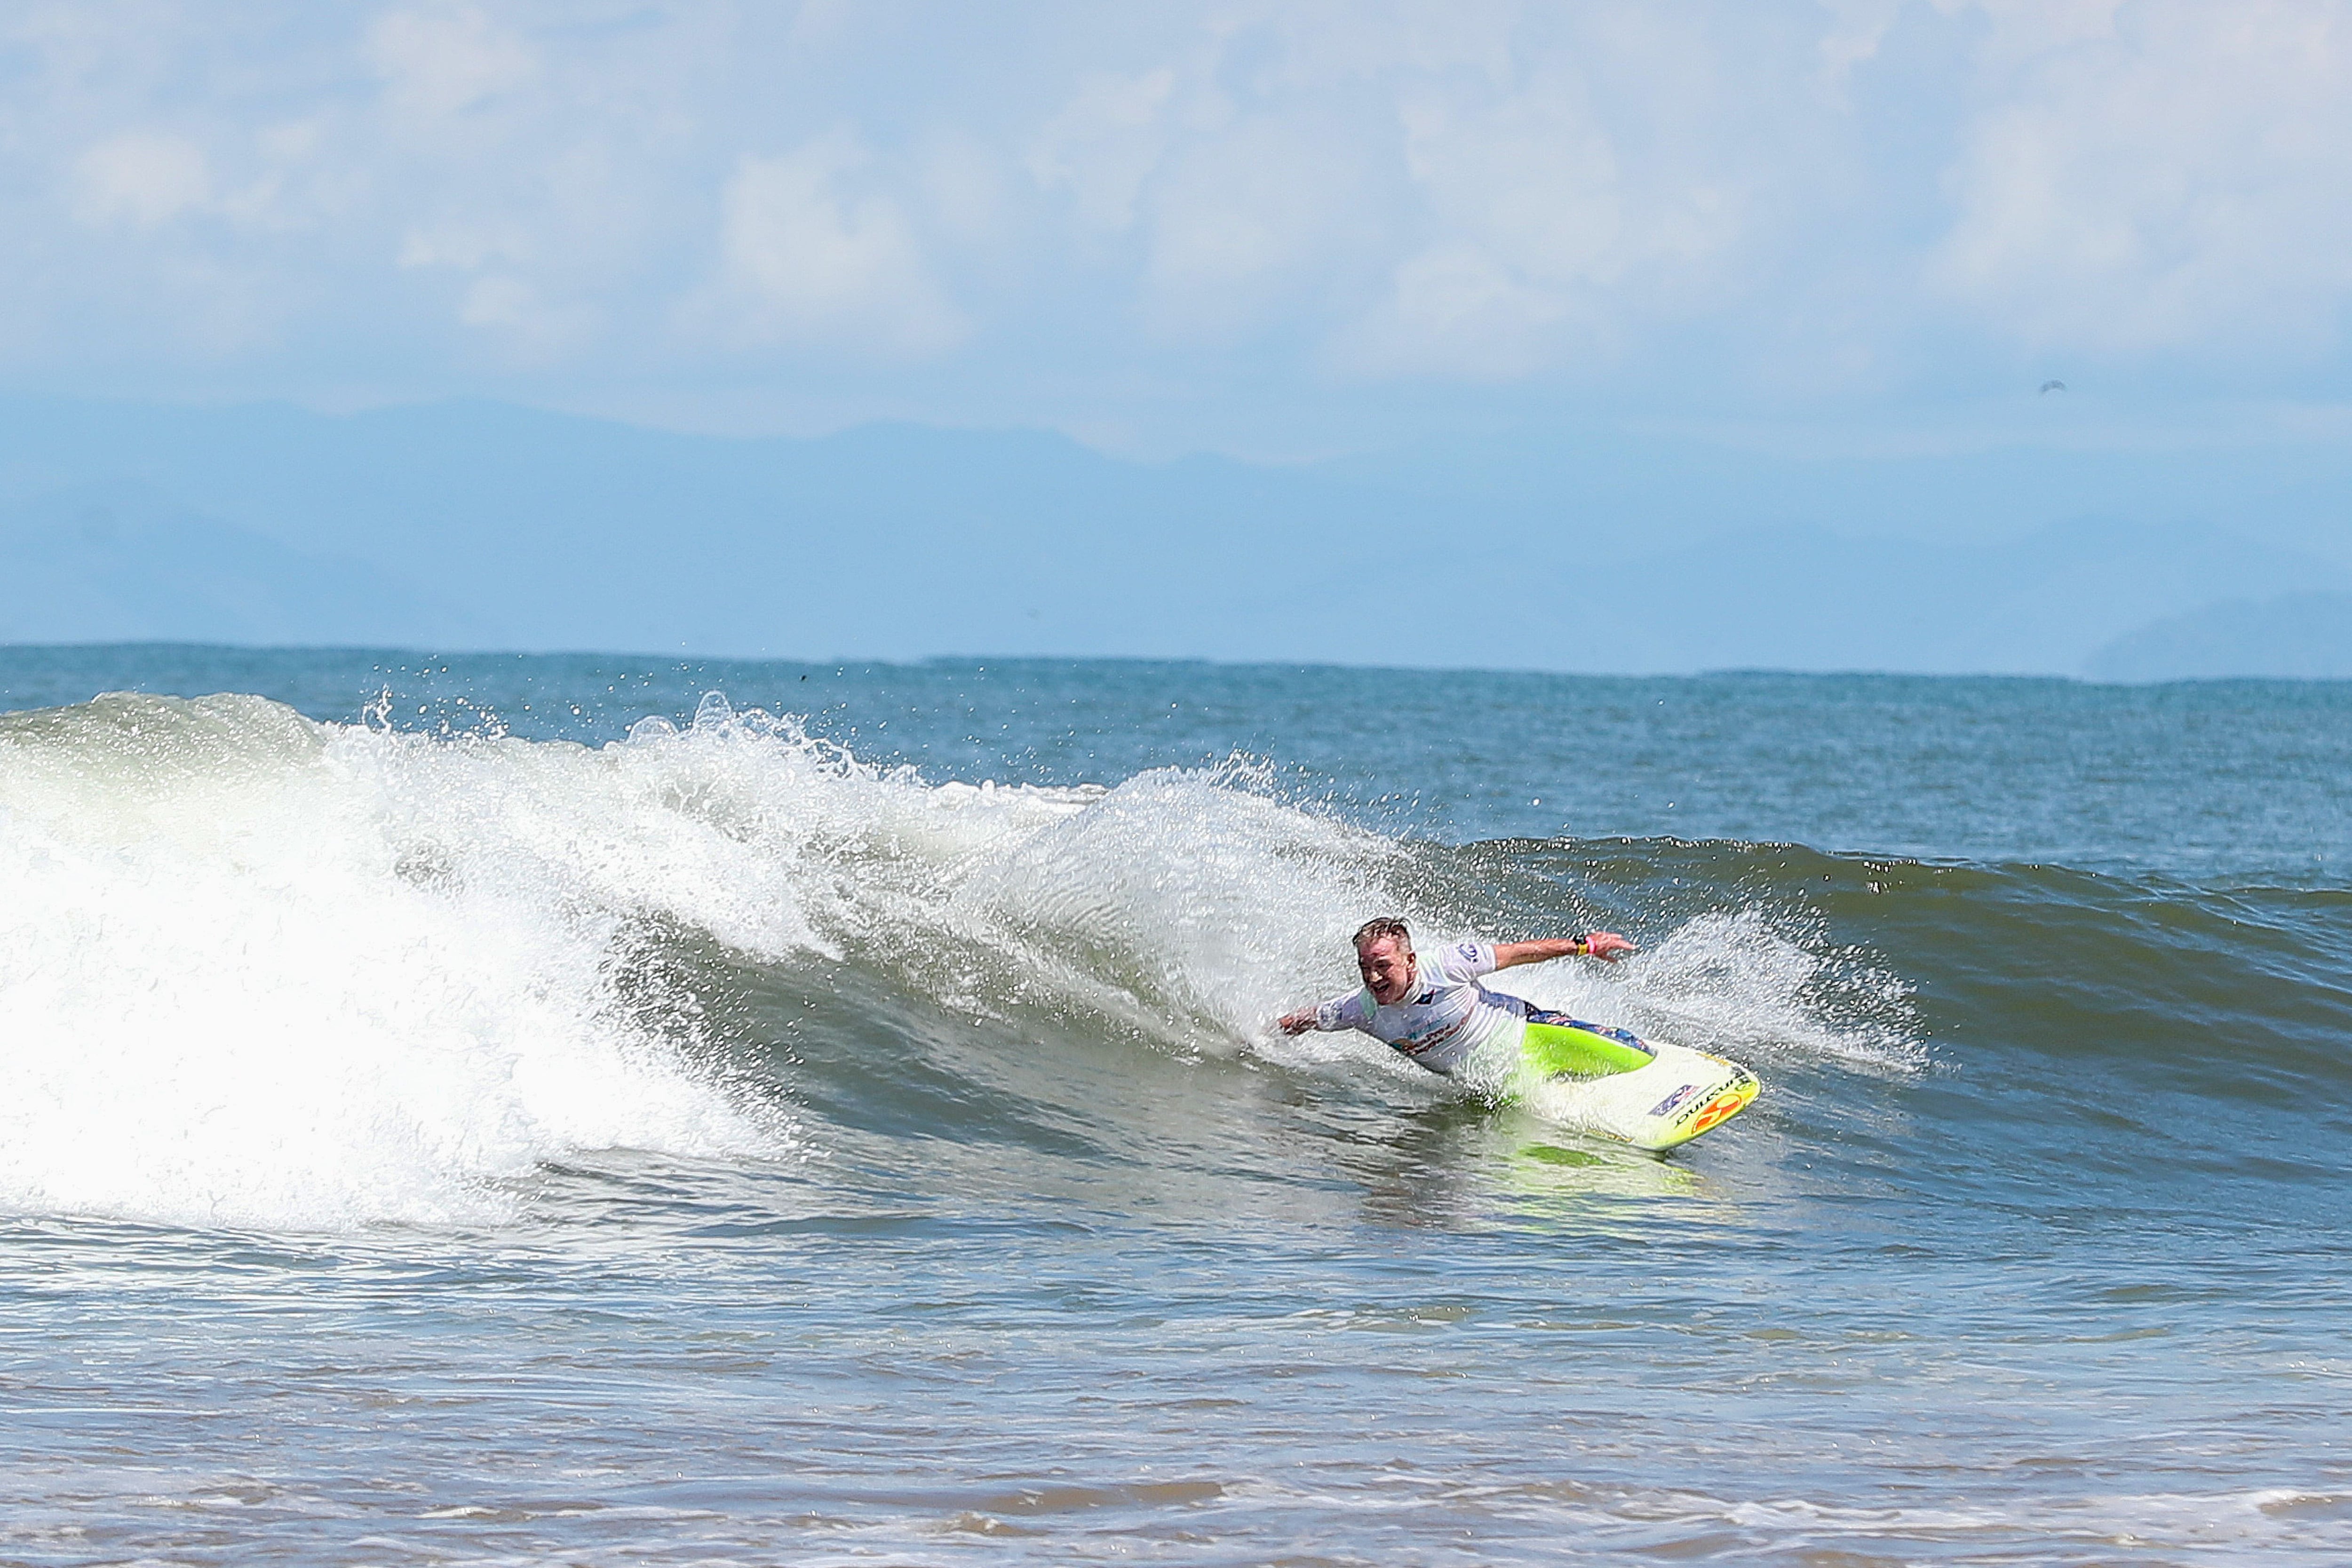 Durante la competencia, los surfistas están conscientes de que deben demostrar sus habilidades sin importar la intensidad de las olas, con el objetivo de obtener una medalla en el torneo internacional de Surf Adaptado.